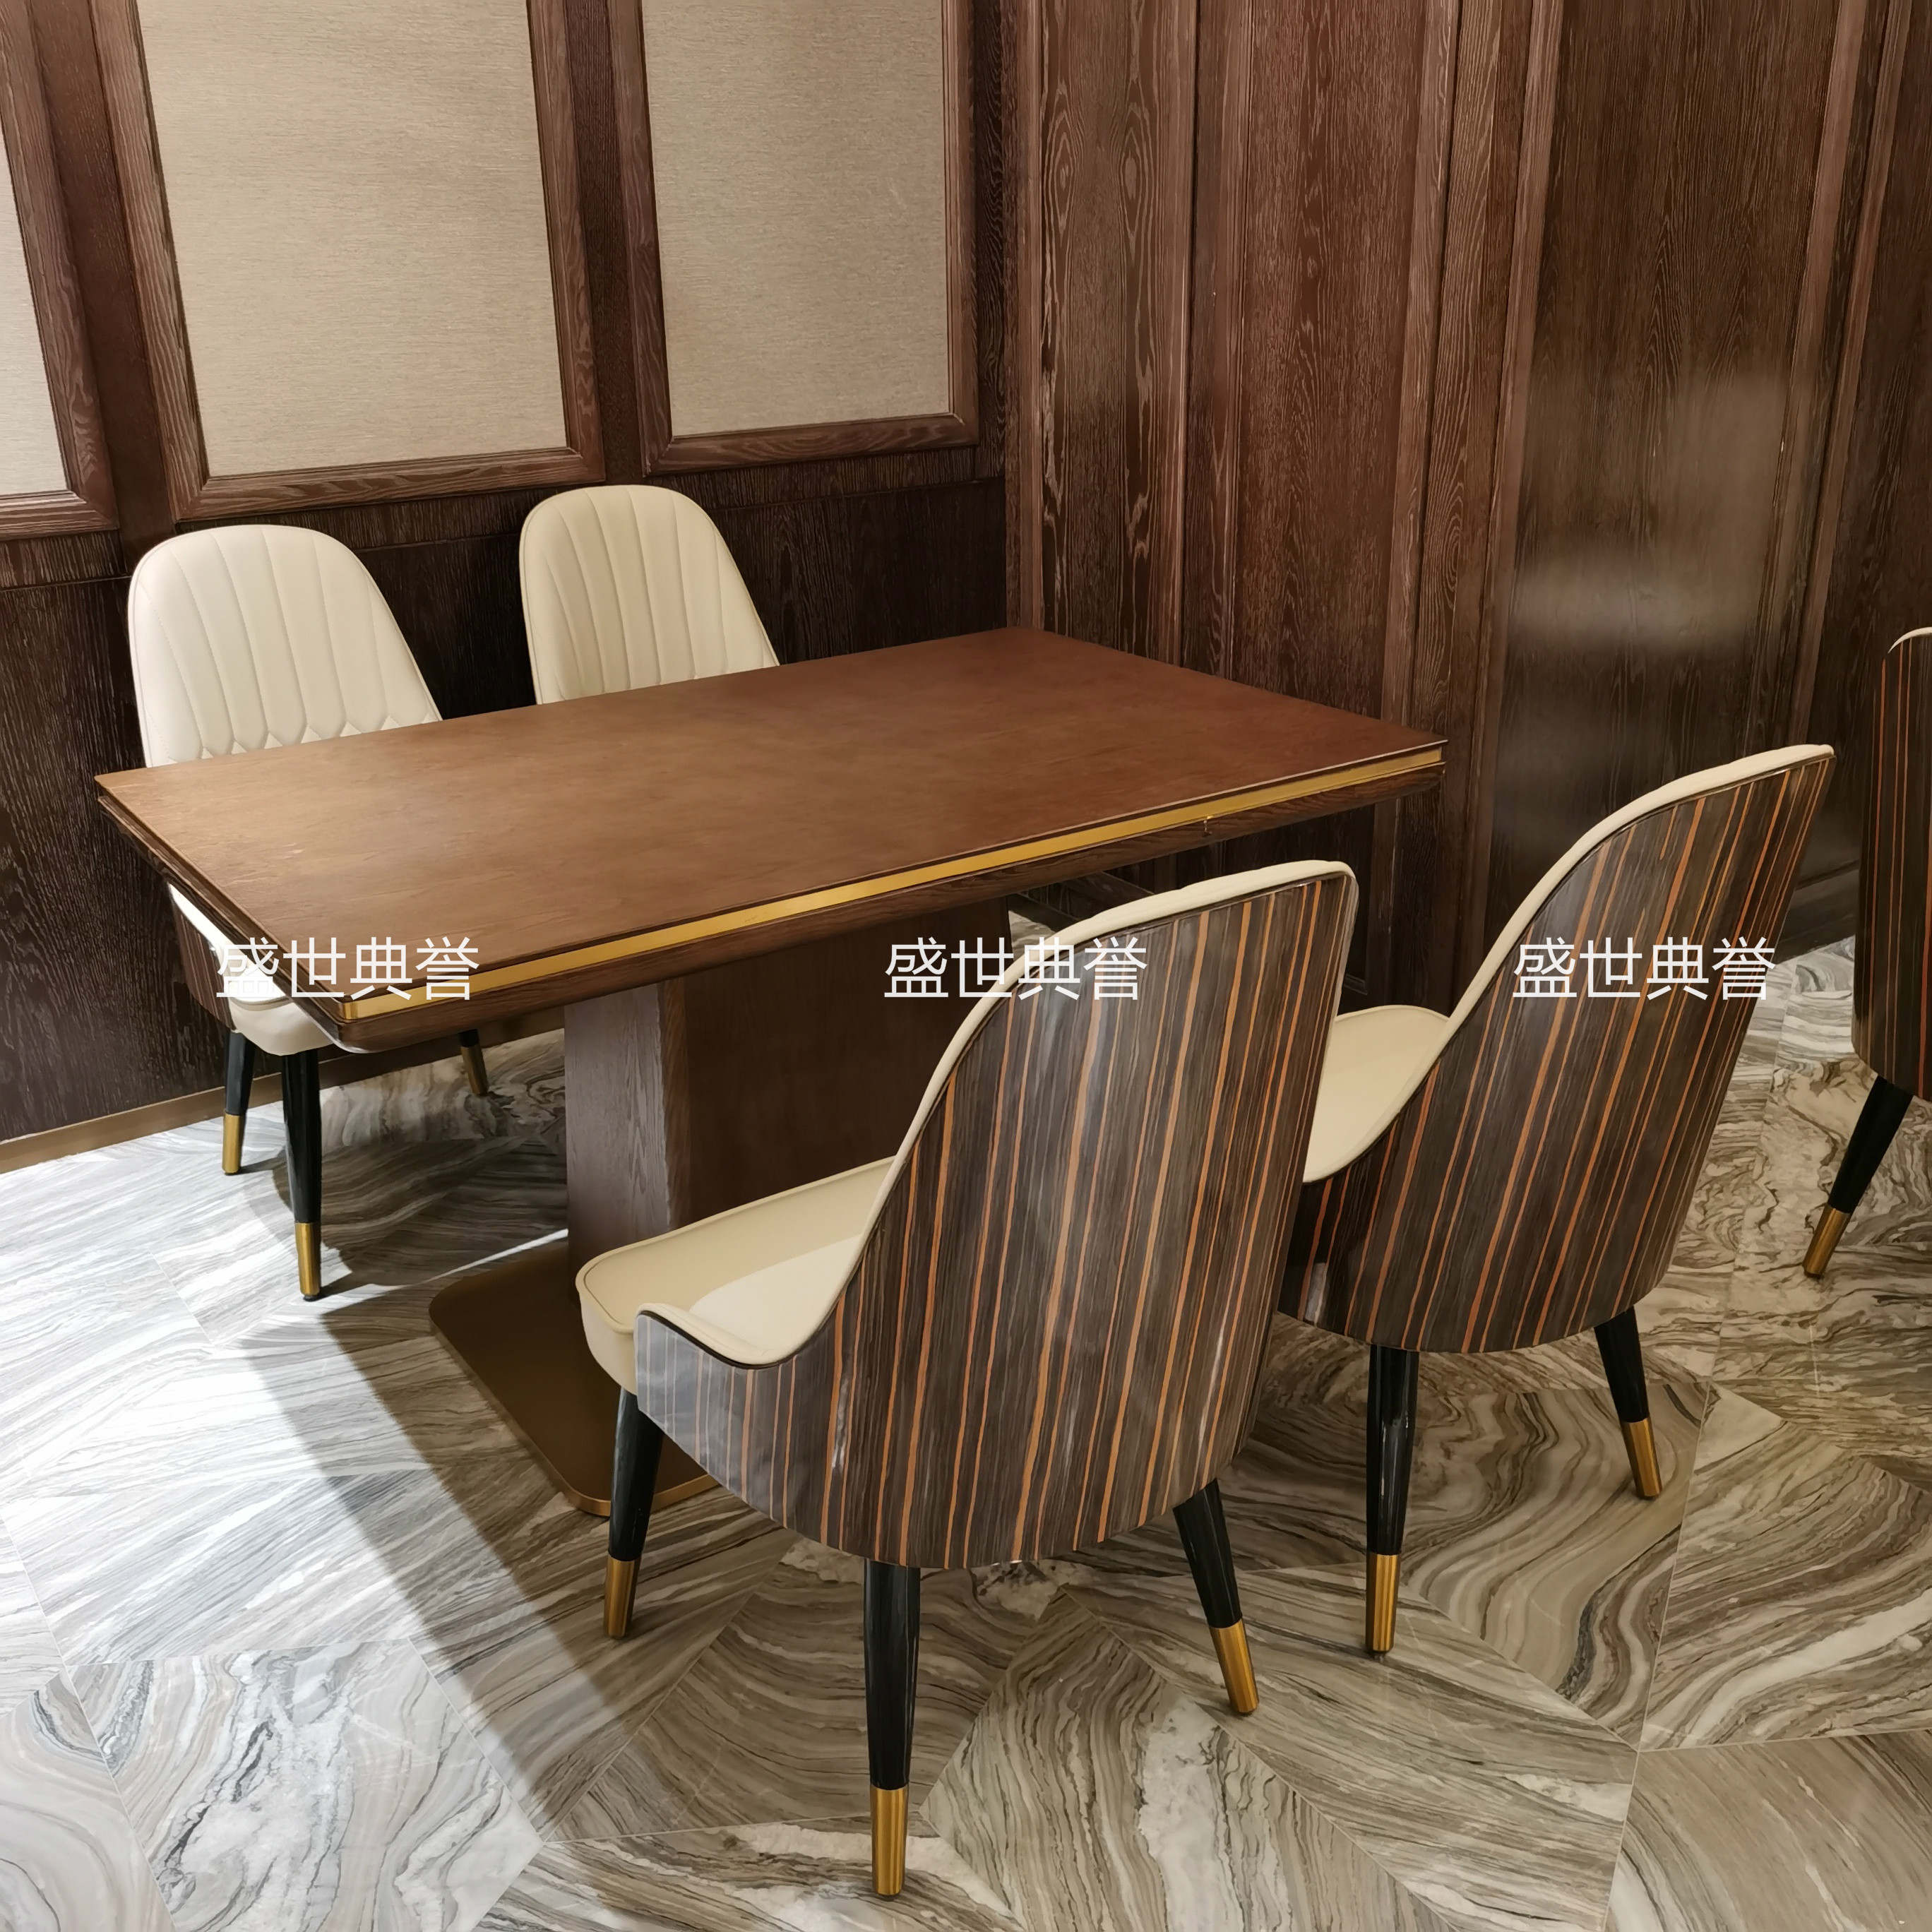 北京度假酒店早餐厅桌椅五星级宾馆西餐厅轻奢椅子自助餐厅实木椅